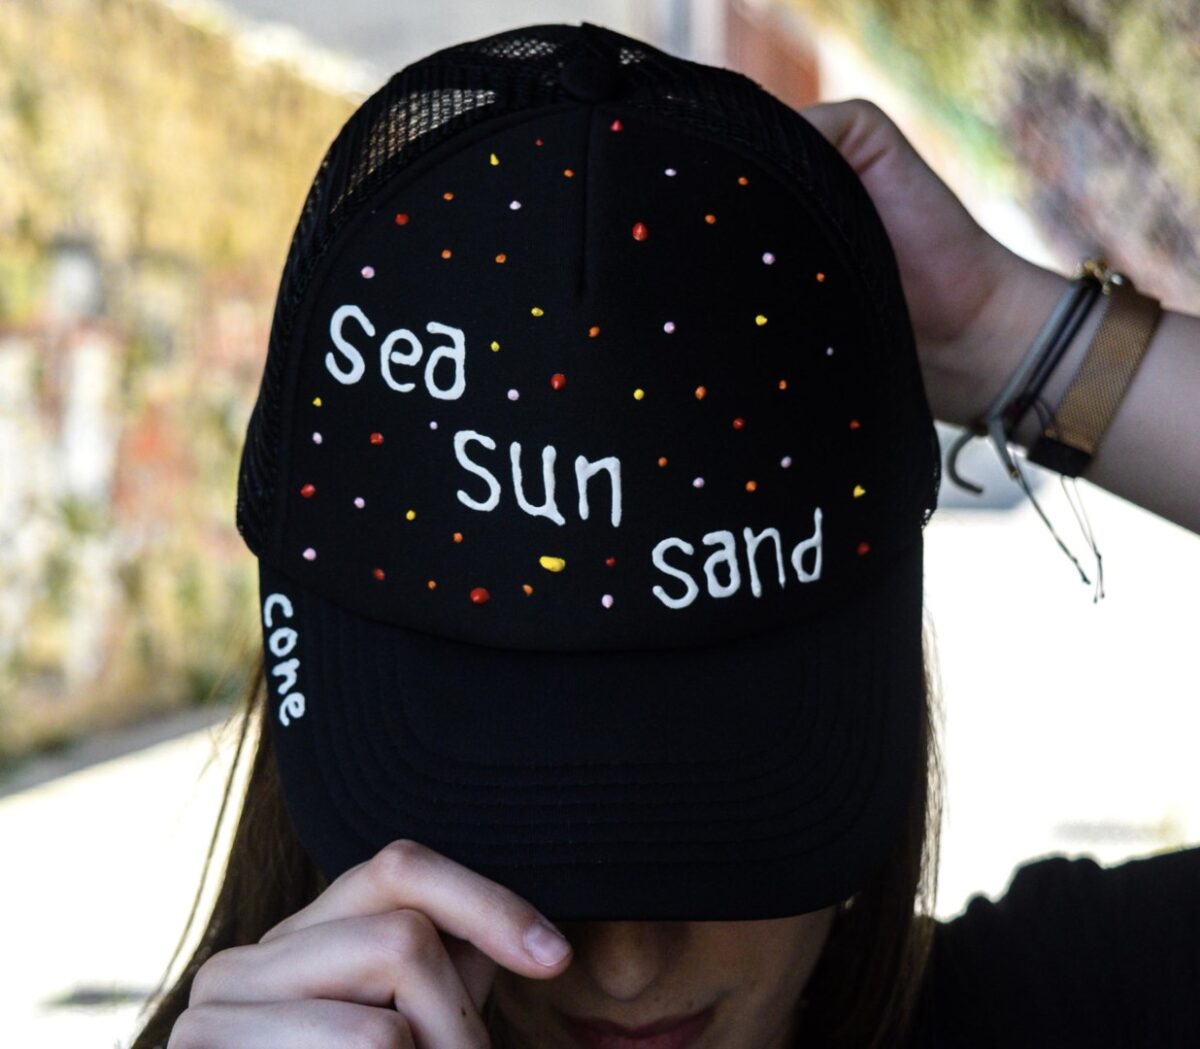 “Sea sun sand” “Sea sun sand” “Sea sun sand” 5